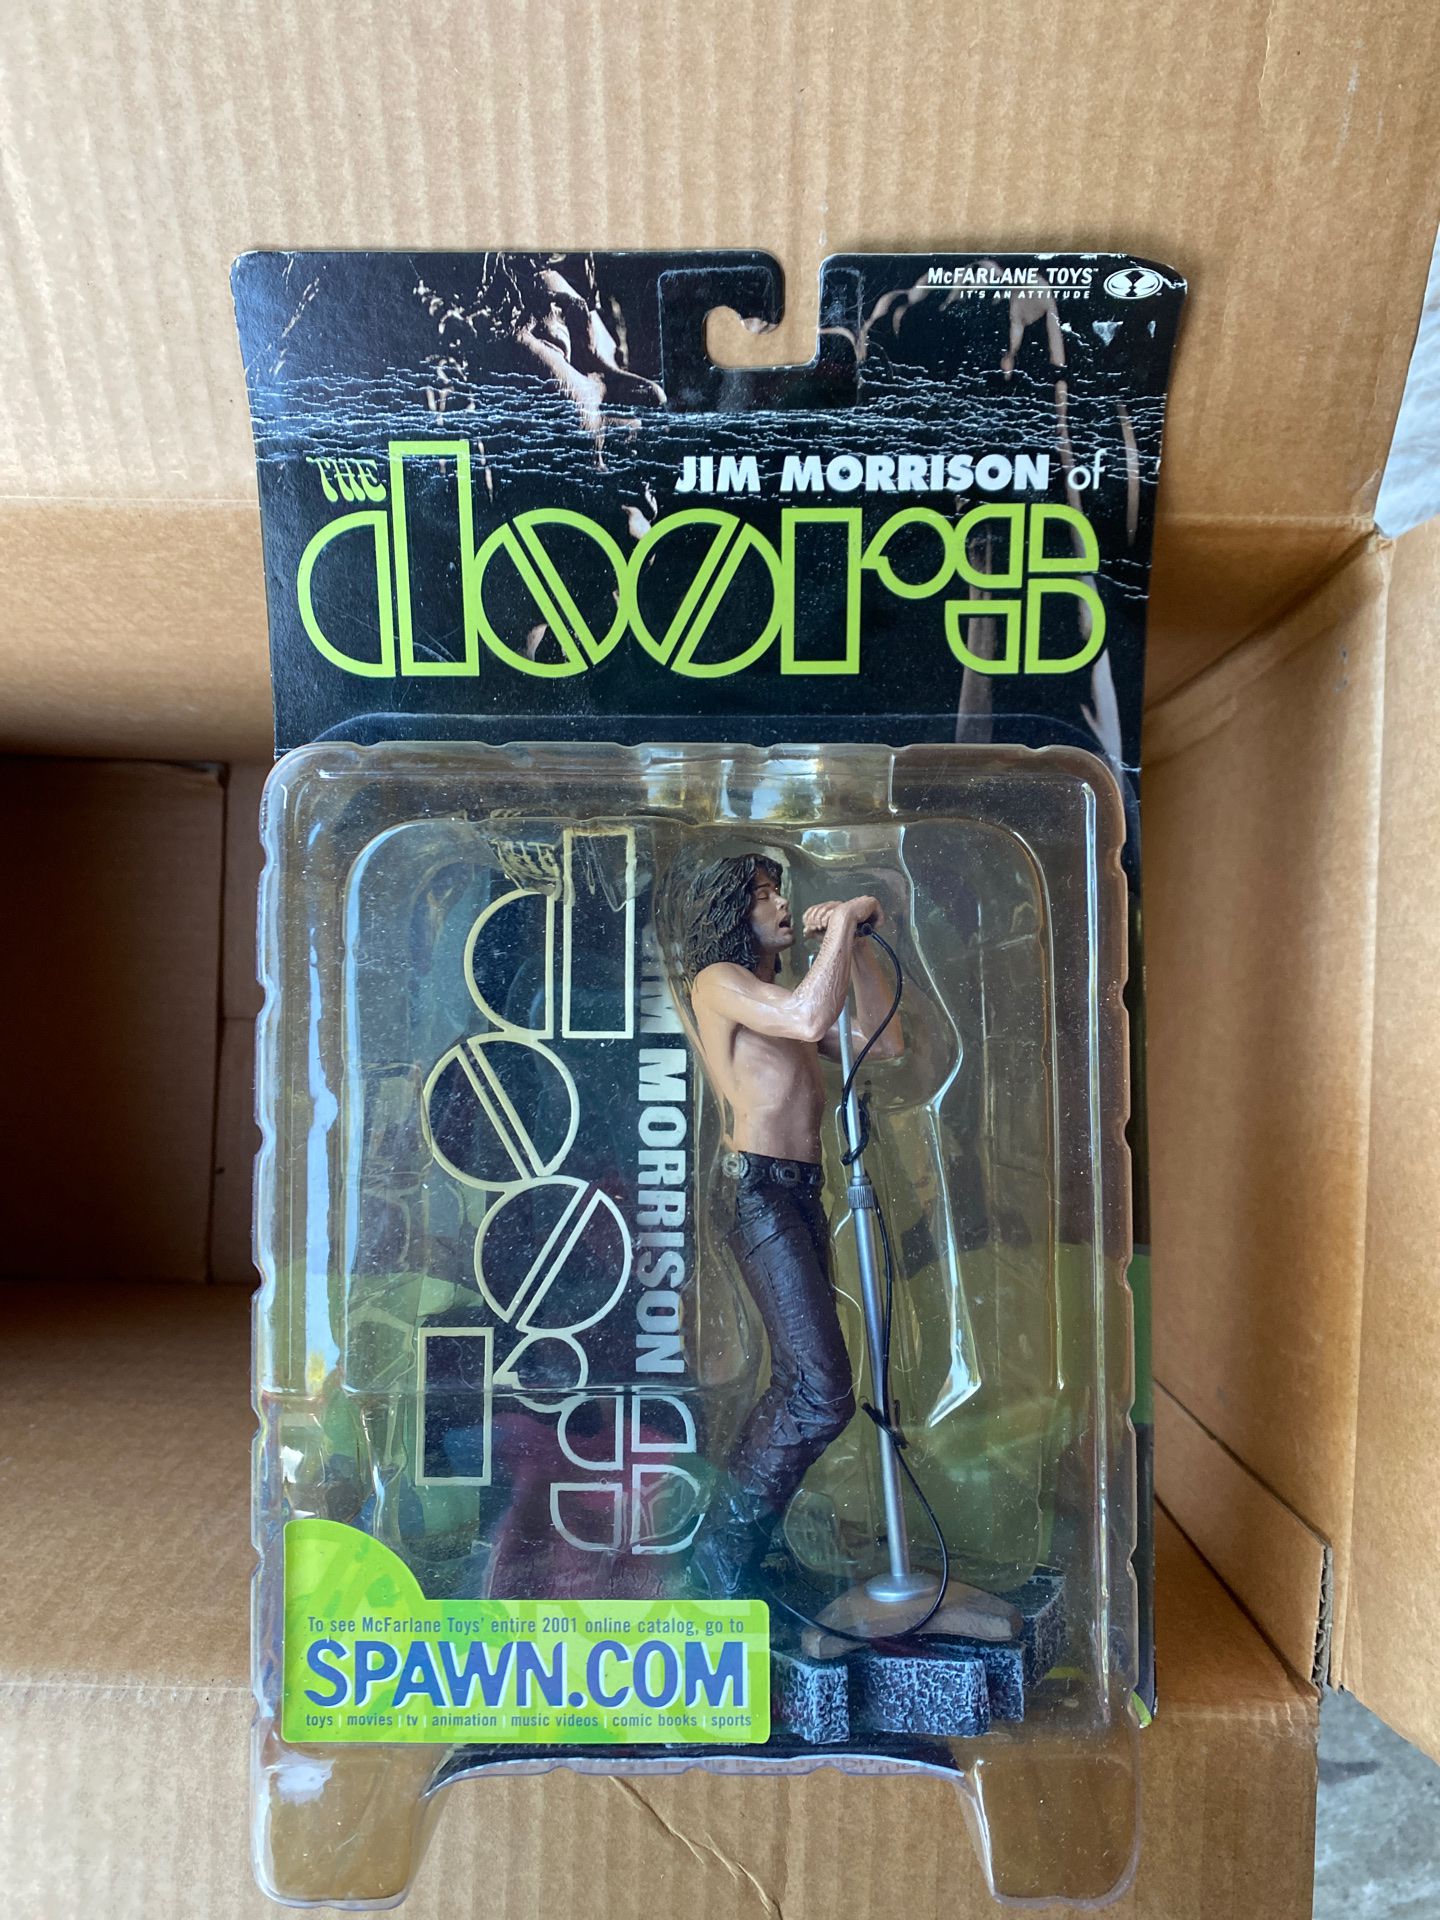 Jim Morrison, Doors, toy, memorabilia